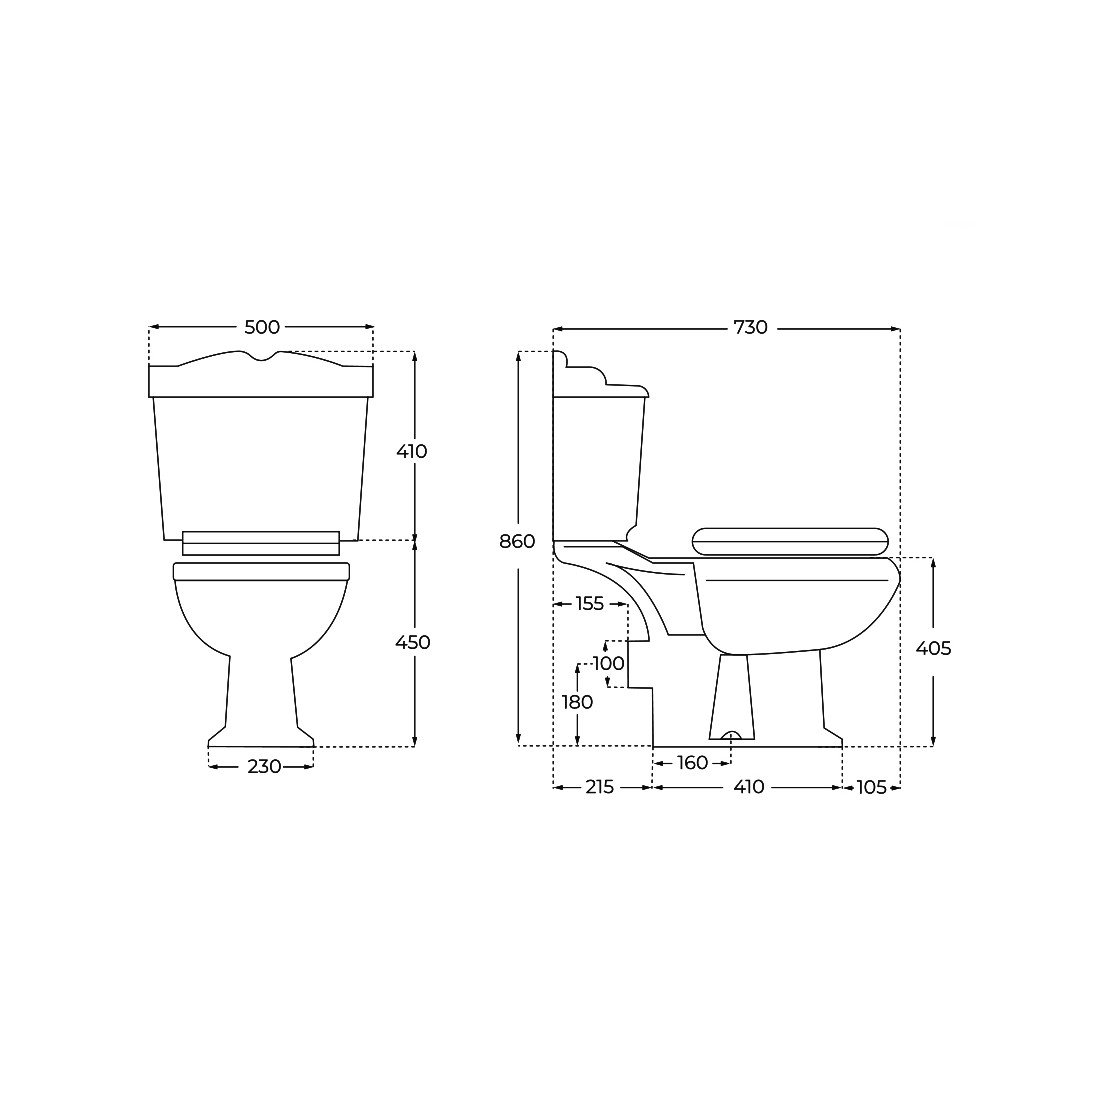 ▷ Achetez de toilette classique York avec abs couvercle